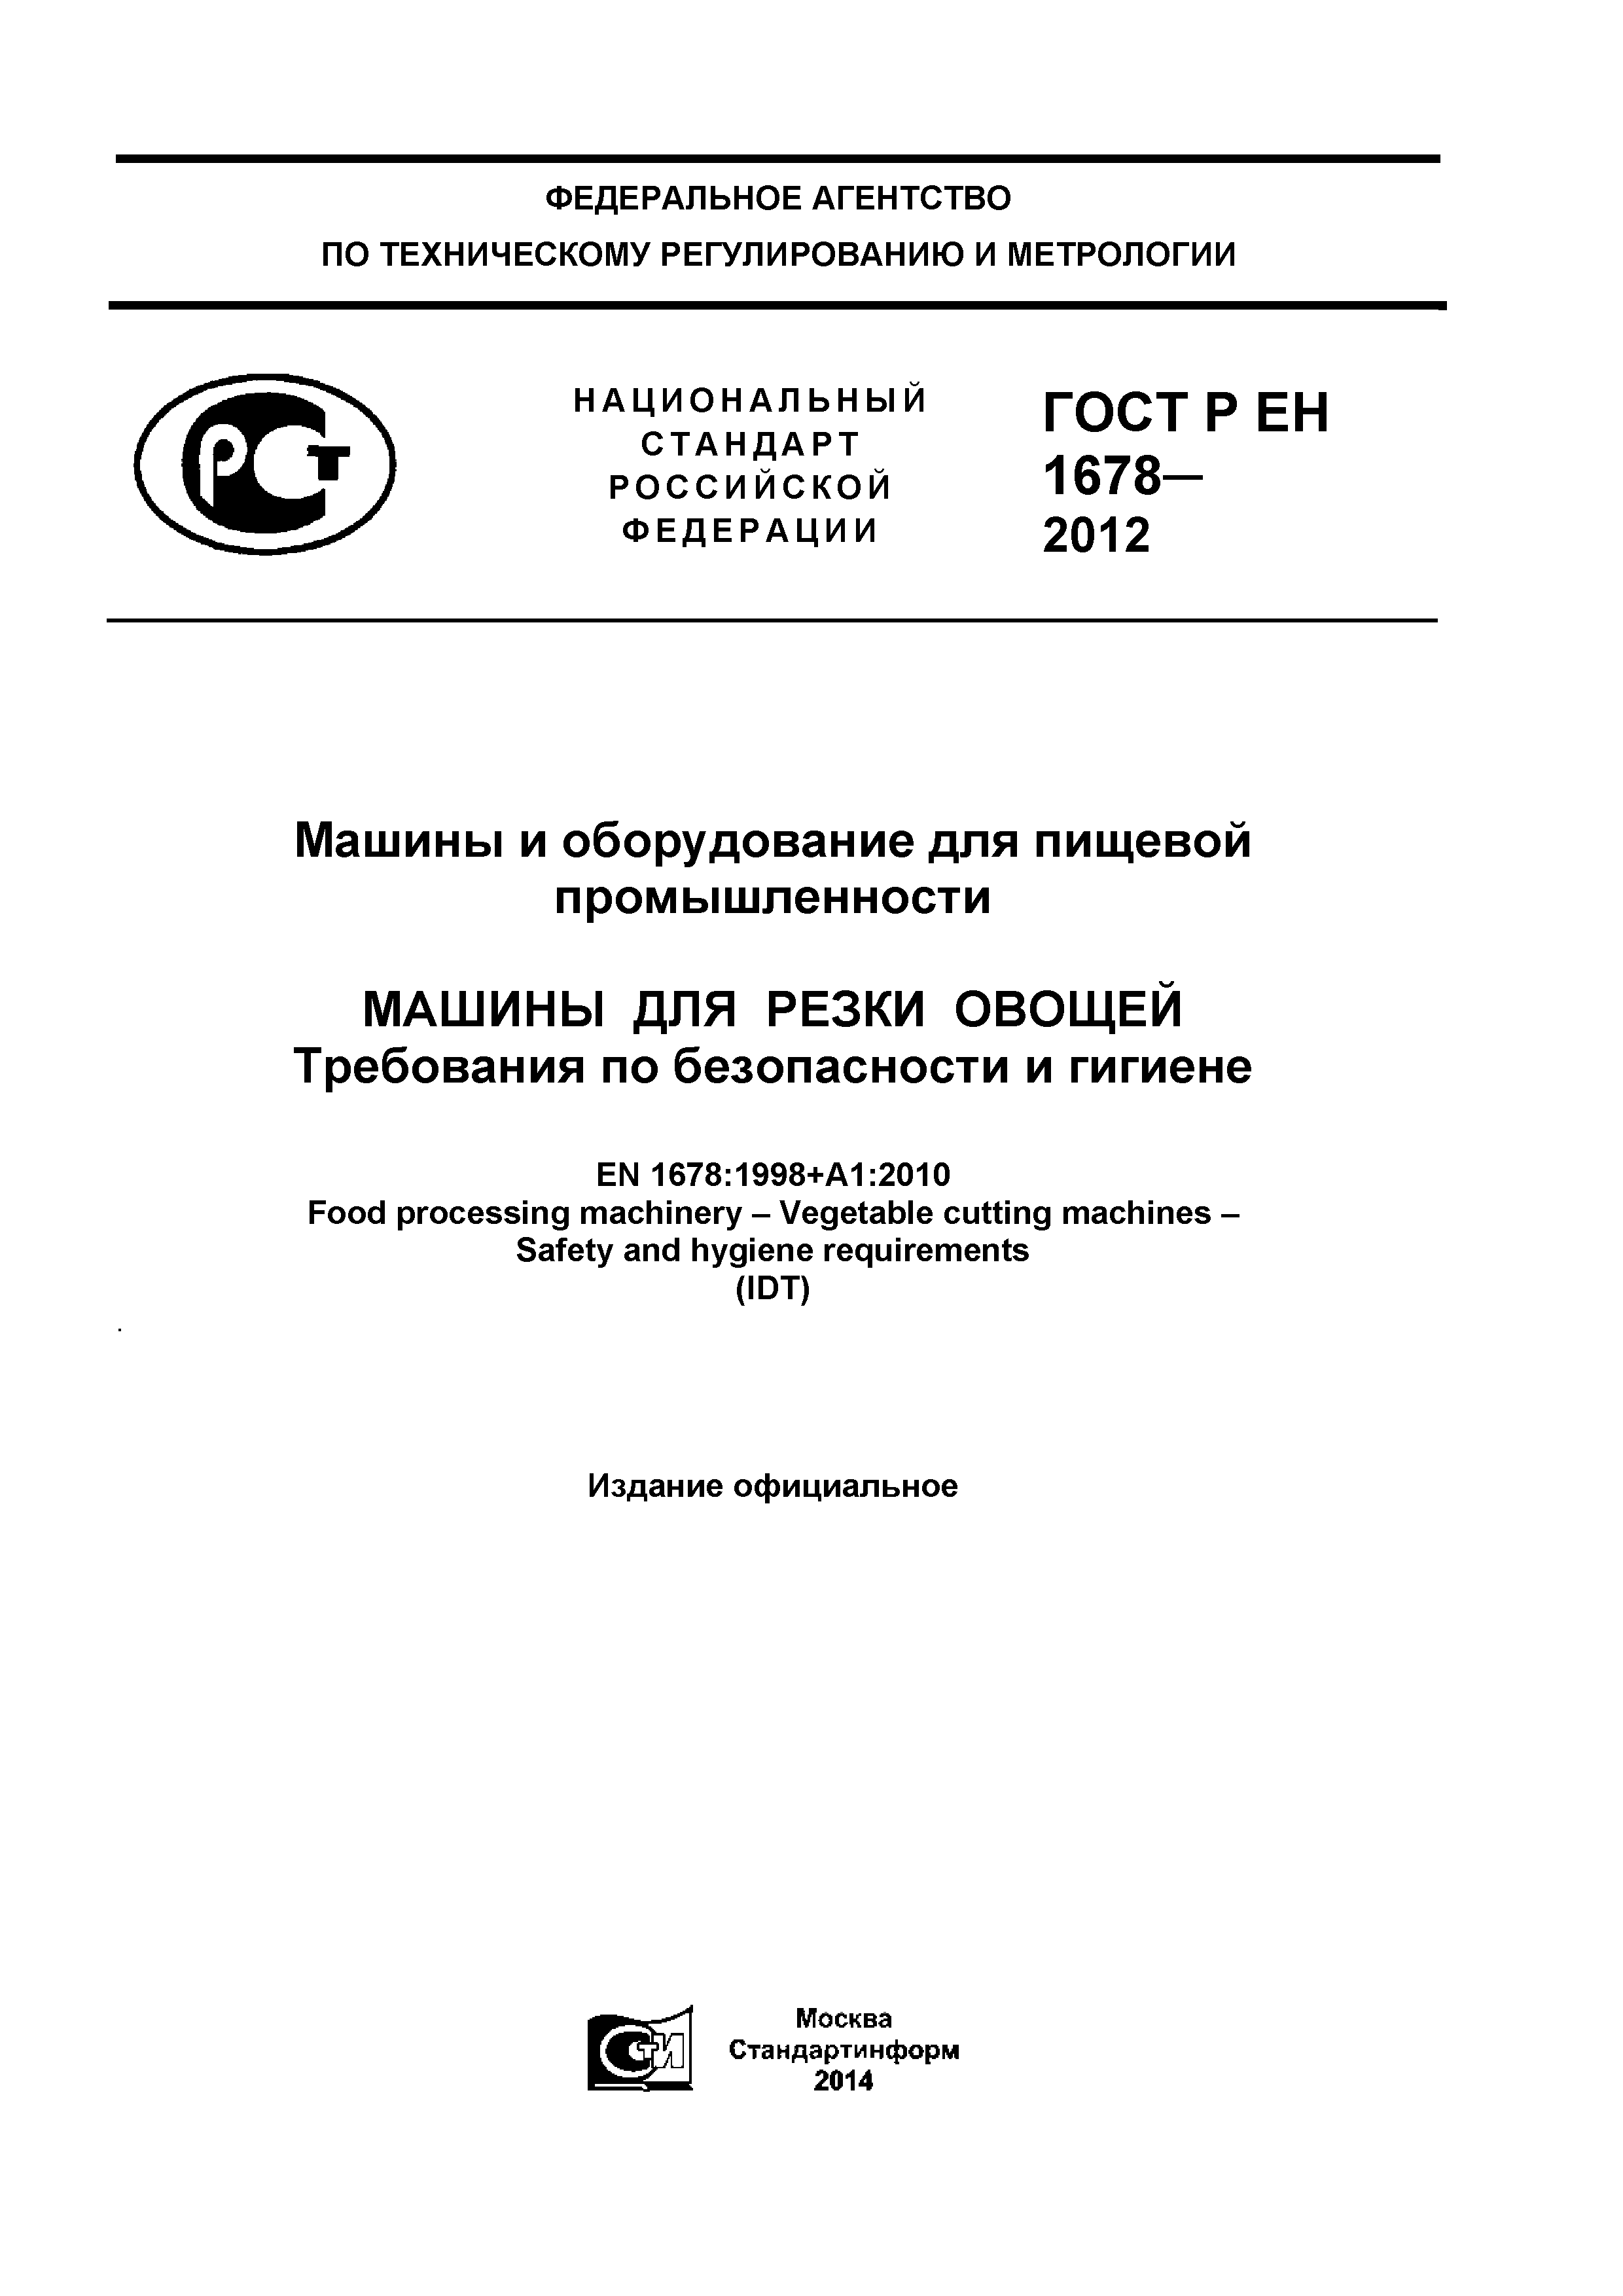 ГОСТ Р ЕН 1678-2012